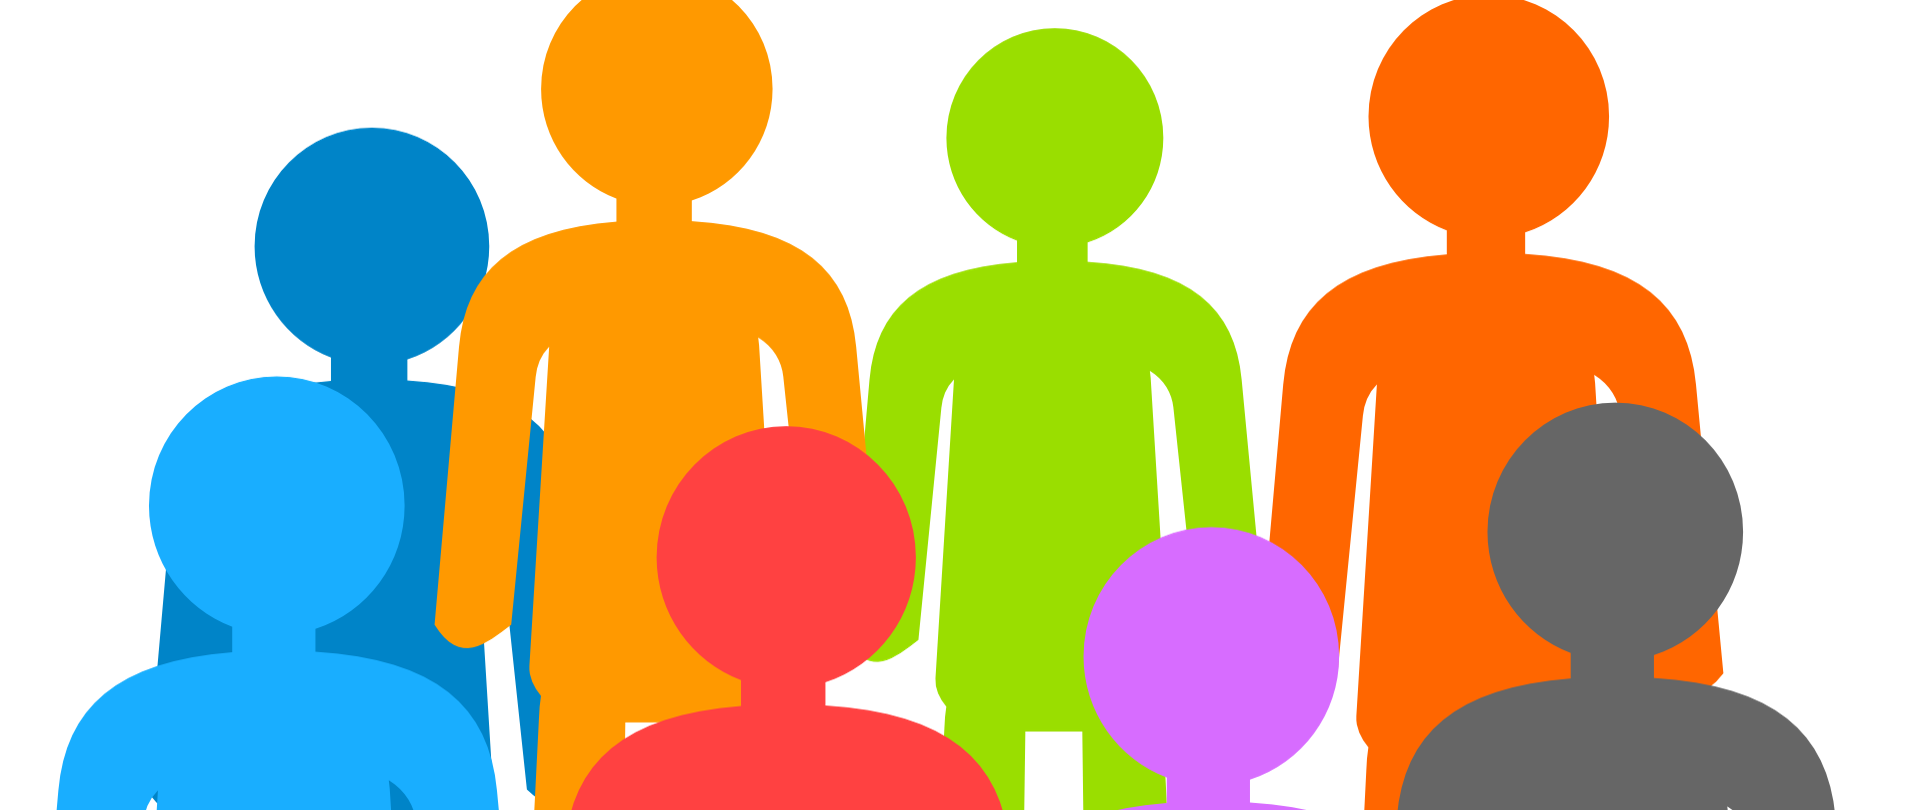 Grafika przedstawiająca postaci ludzi w różnych kolorach. 